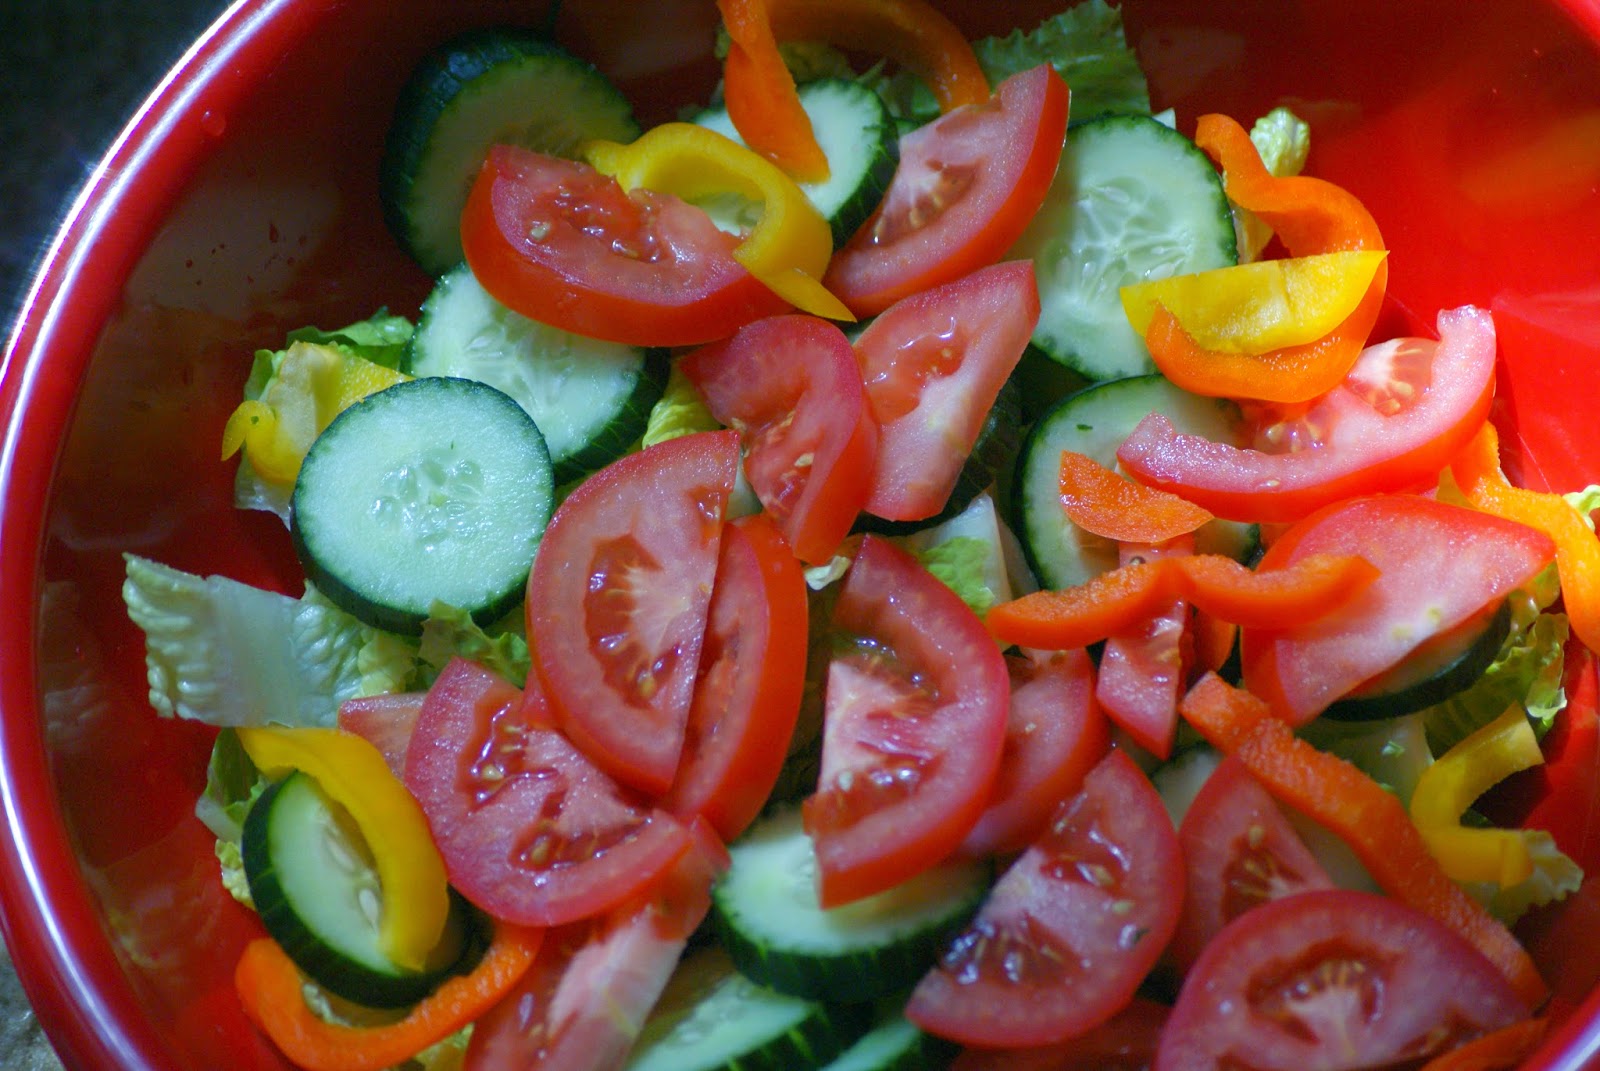 Healthy Fourth of July Menu - Salad